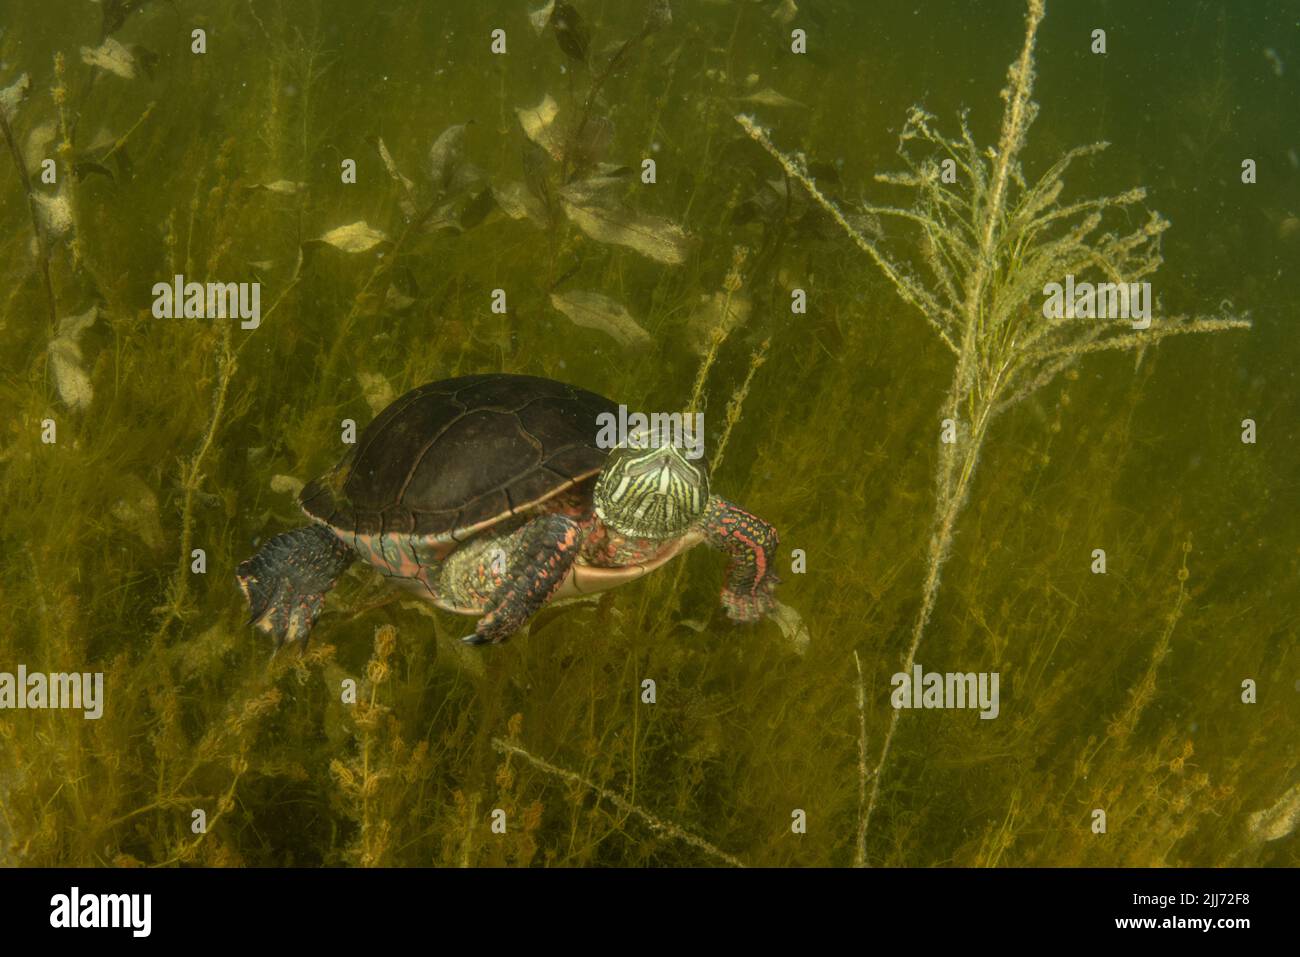 Eine gemalte Schildkröte (Chrysemys picta), die in einem Süßwassersee von Wisconsin unter Wasser schwimmt. Er verbringt seine Zeit in der Wasservegetation am Boden. Stockfoto